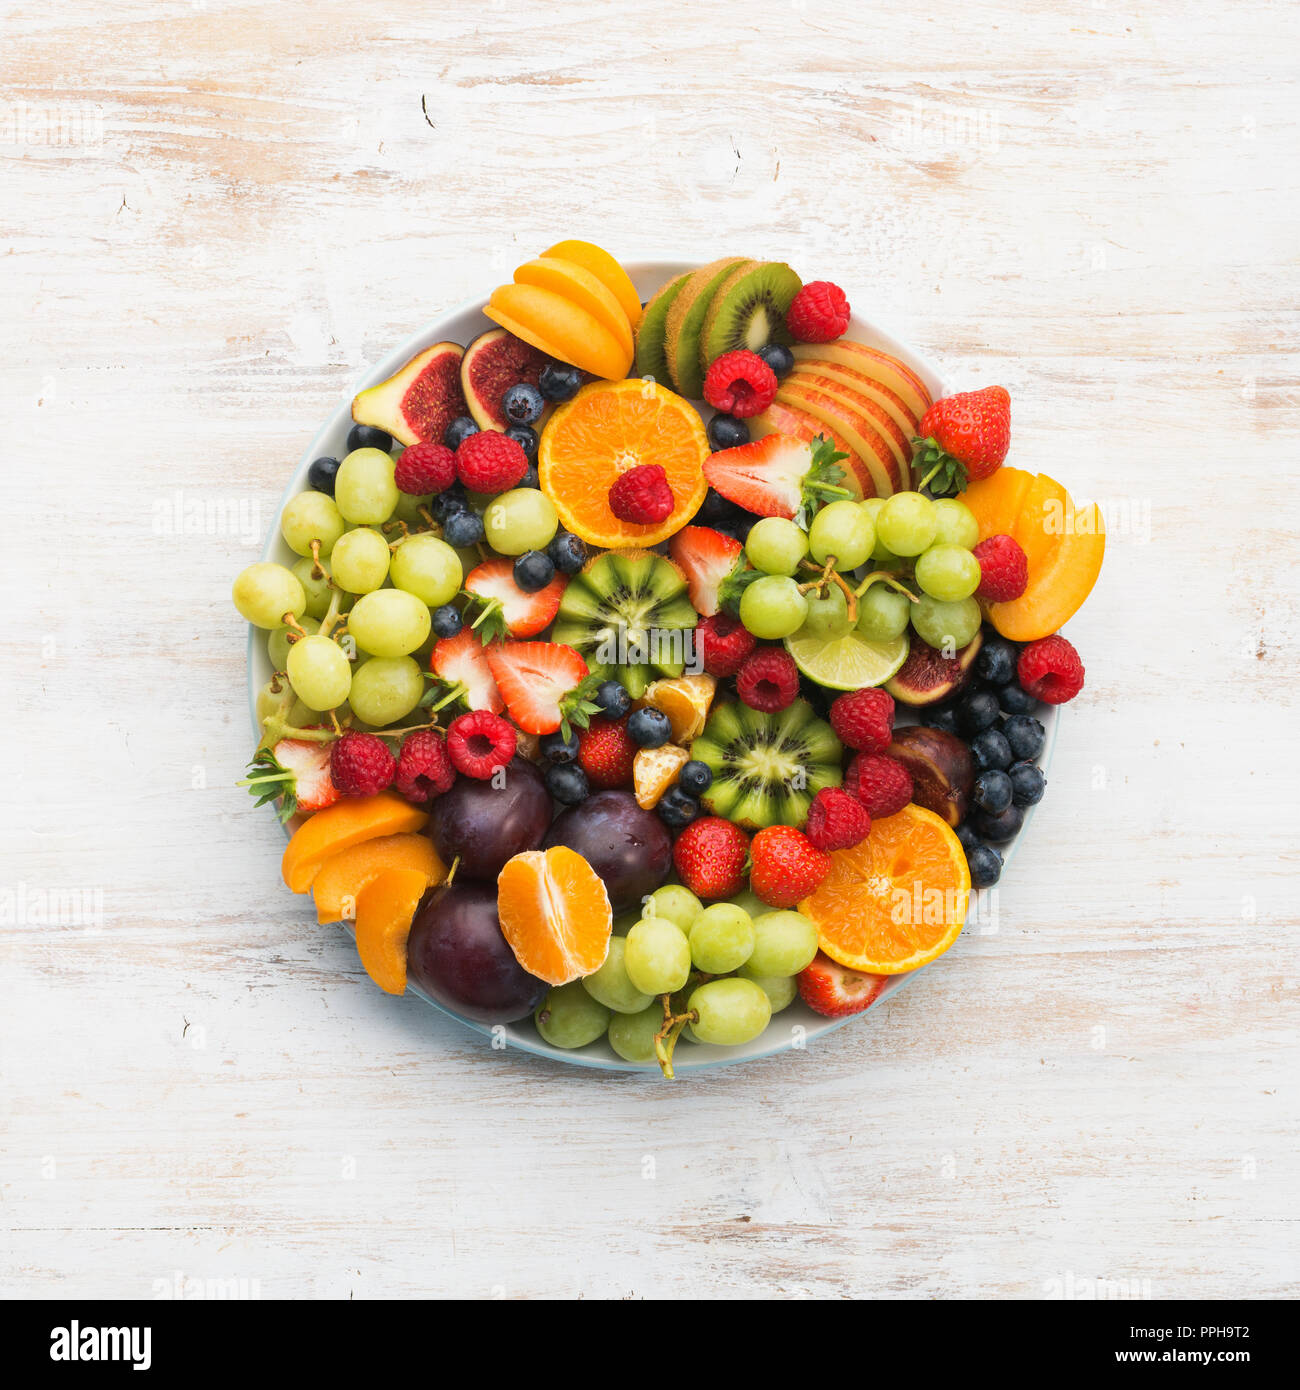 Plato de frutas saludables frambuesas, fresas, naranjas Ciruelas Kiwis Manzanas Uvas arándanos sobre la mesa de madera blanca, vista superior, espacio para copiar texto Foto de stock